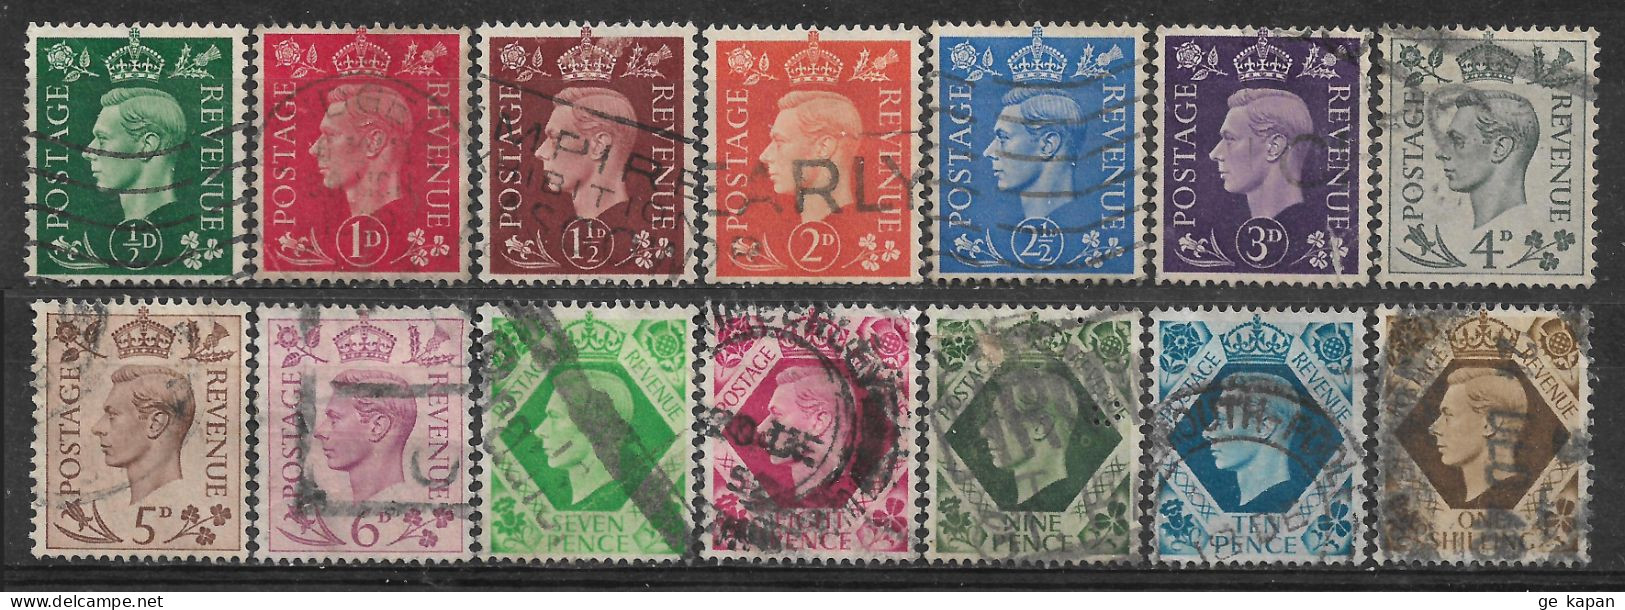 1937-1939 GREAT BRITAIN Complete Set Of 14 Used Stamps (Scott # 235-248) CV $9.10 - Gebruikt